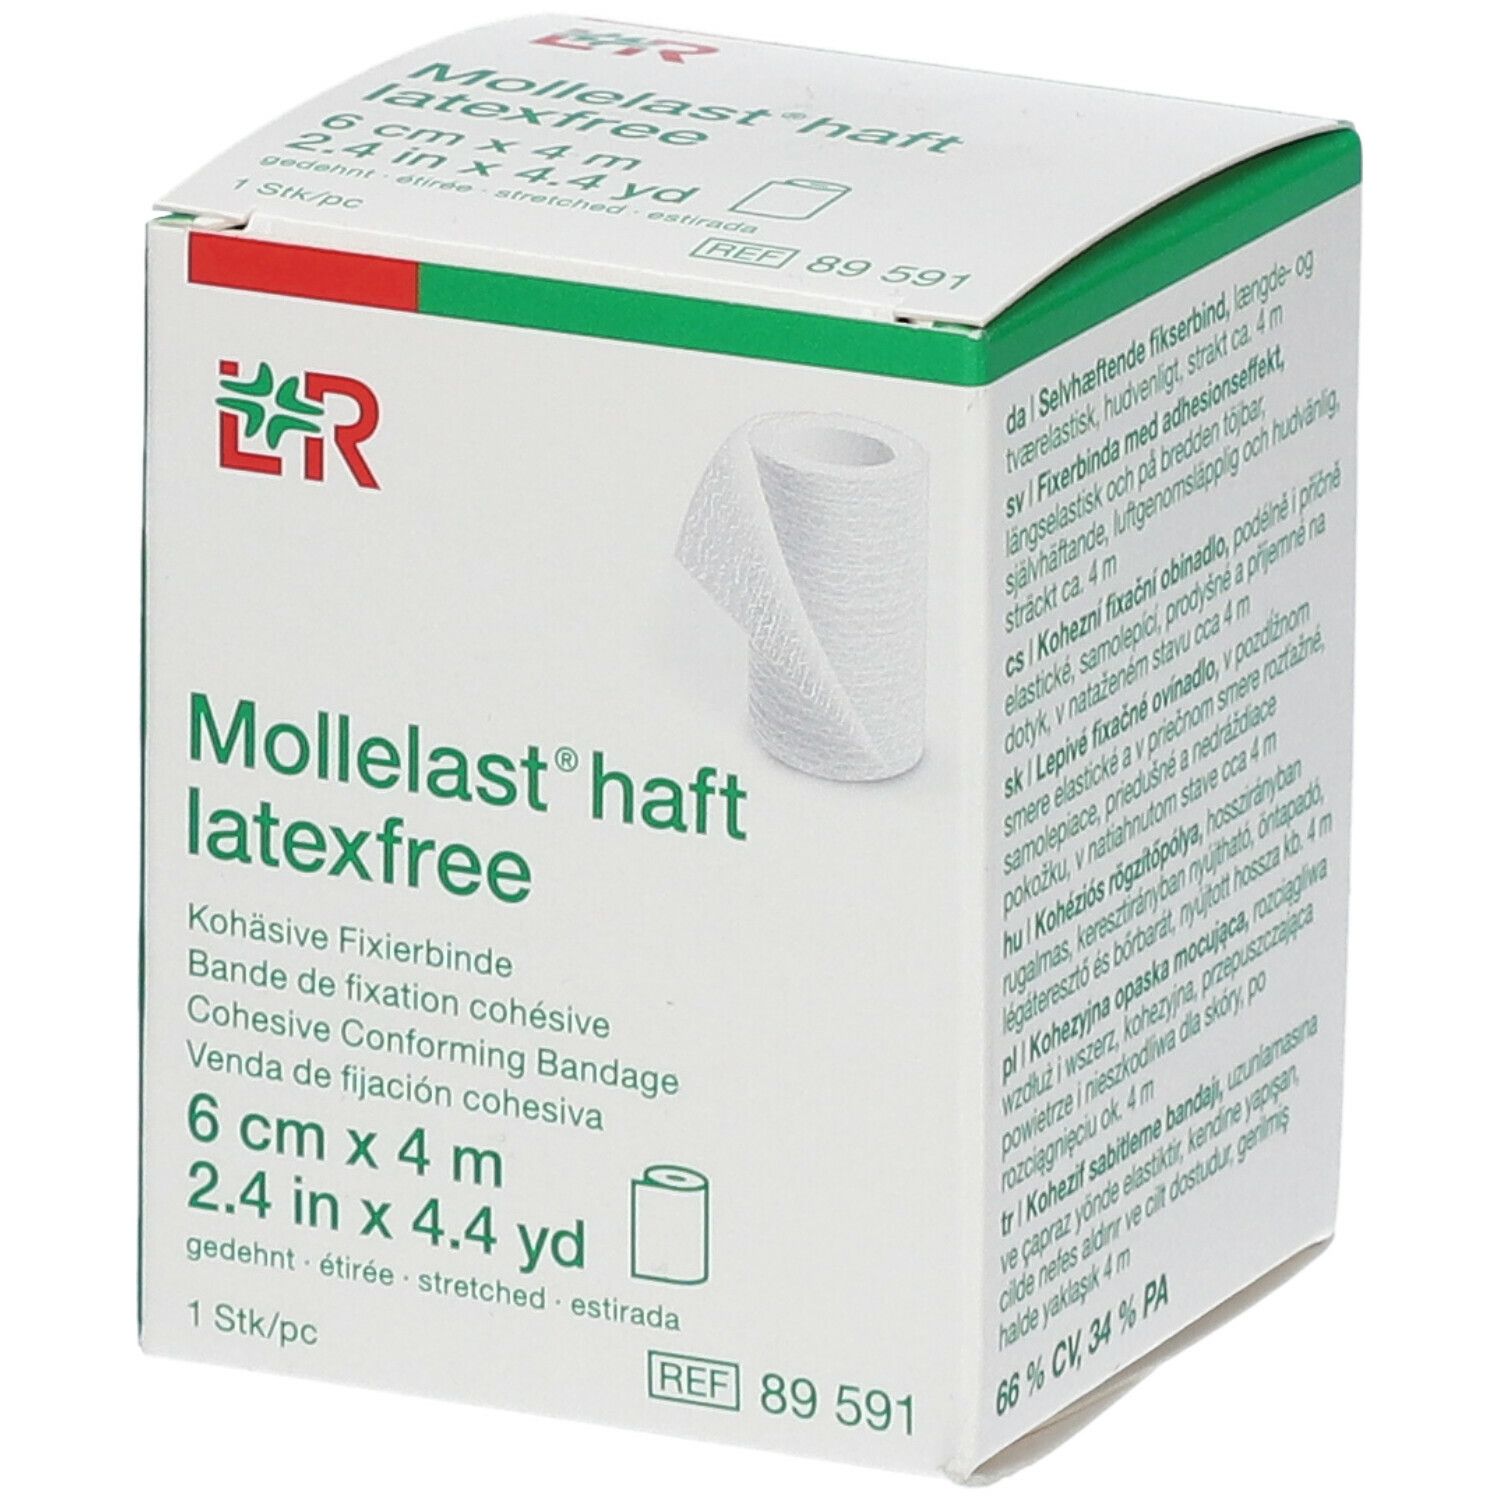 Mollelast Haft Windel Adhesief Latex Free 6cmx4m 89591